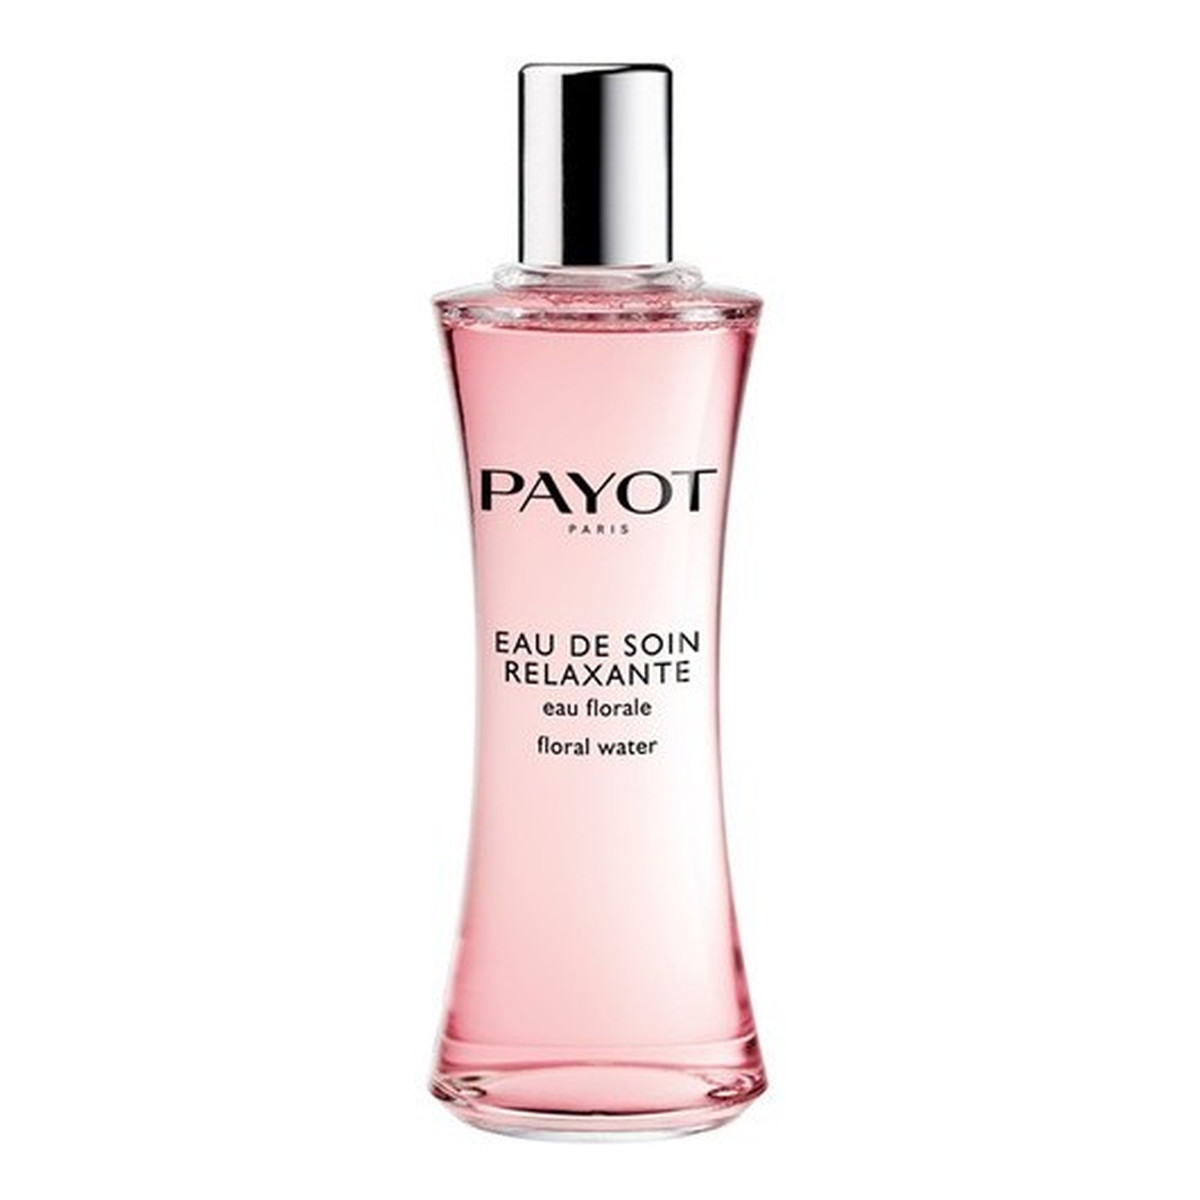 Payot Eau De Soin Relaxante Flower Water With Jasmine Relaksująca mgiełka do ciała 100ml